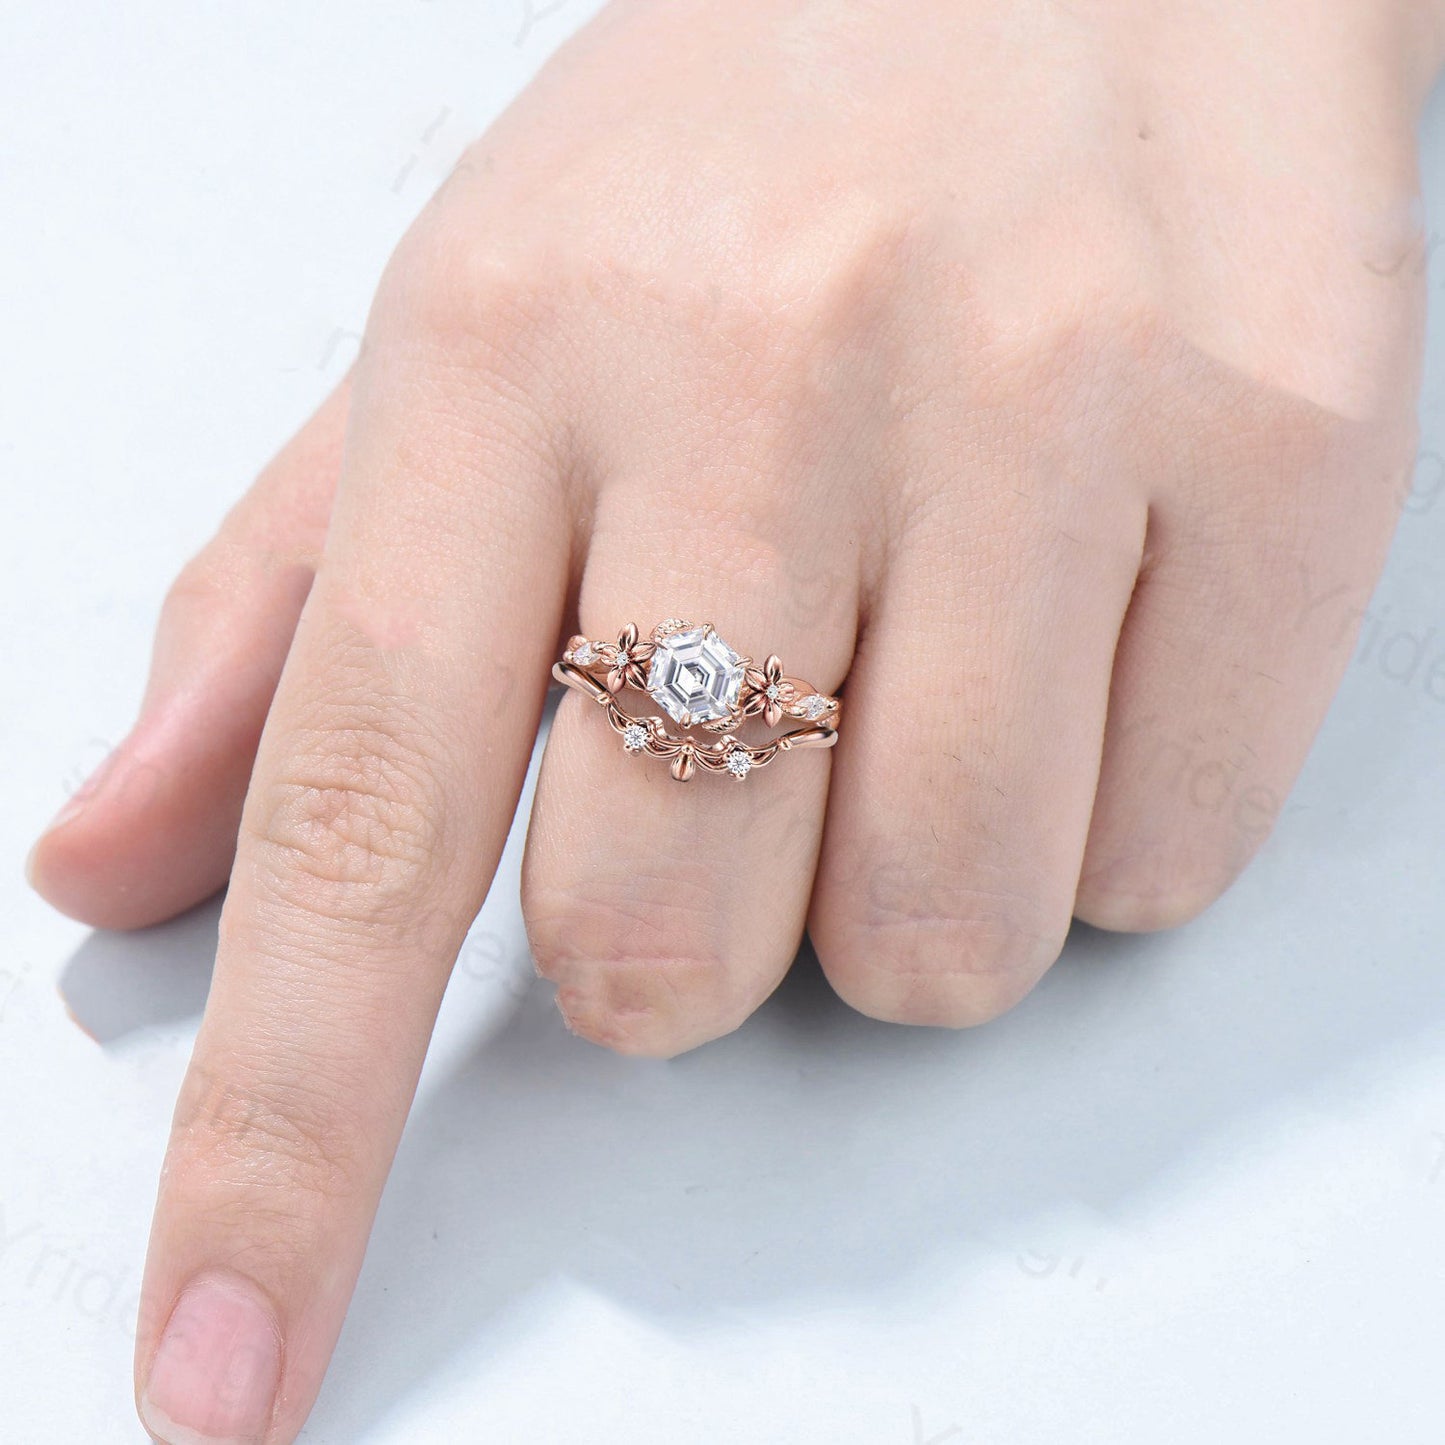 Flower moissanite engagement ring set Nature Inspired hexagon moissanite wedding ring for women vintage cluster leaf bridal ring set gift - PENFINE